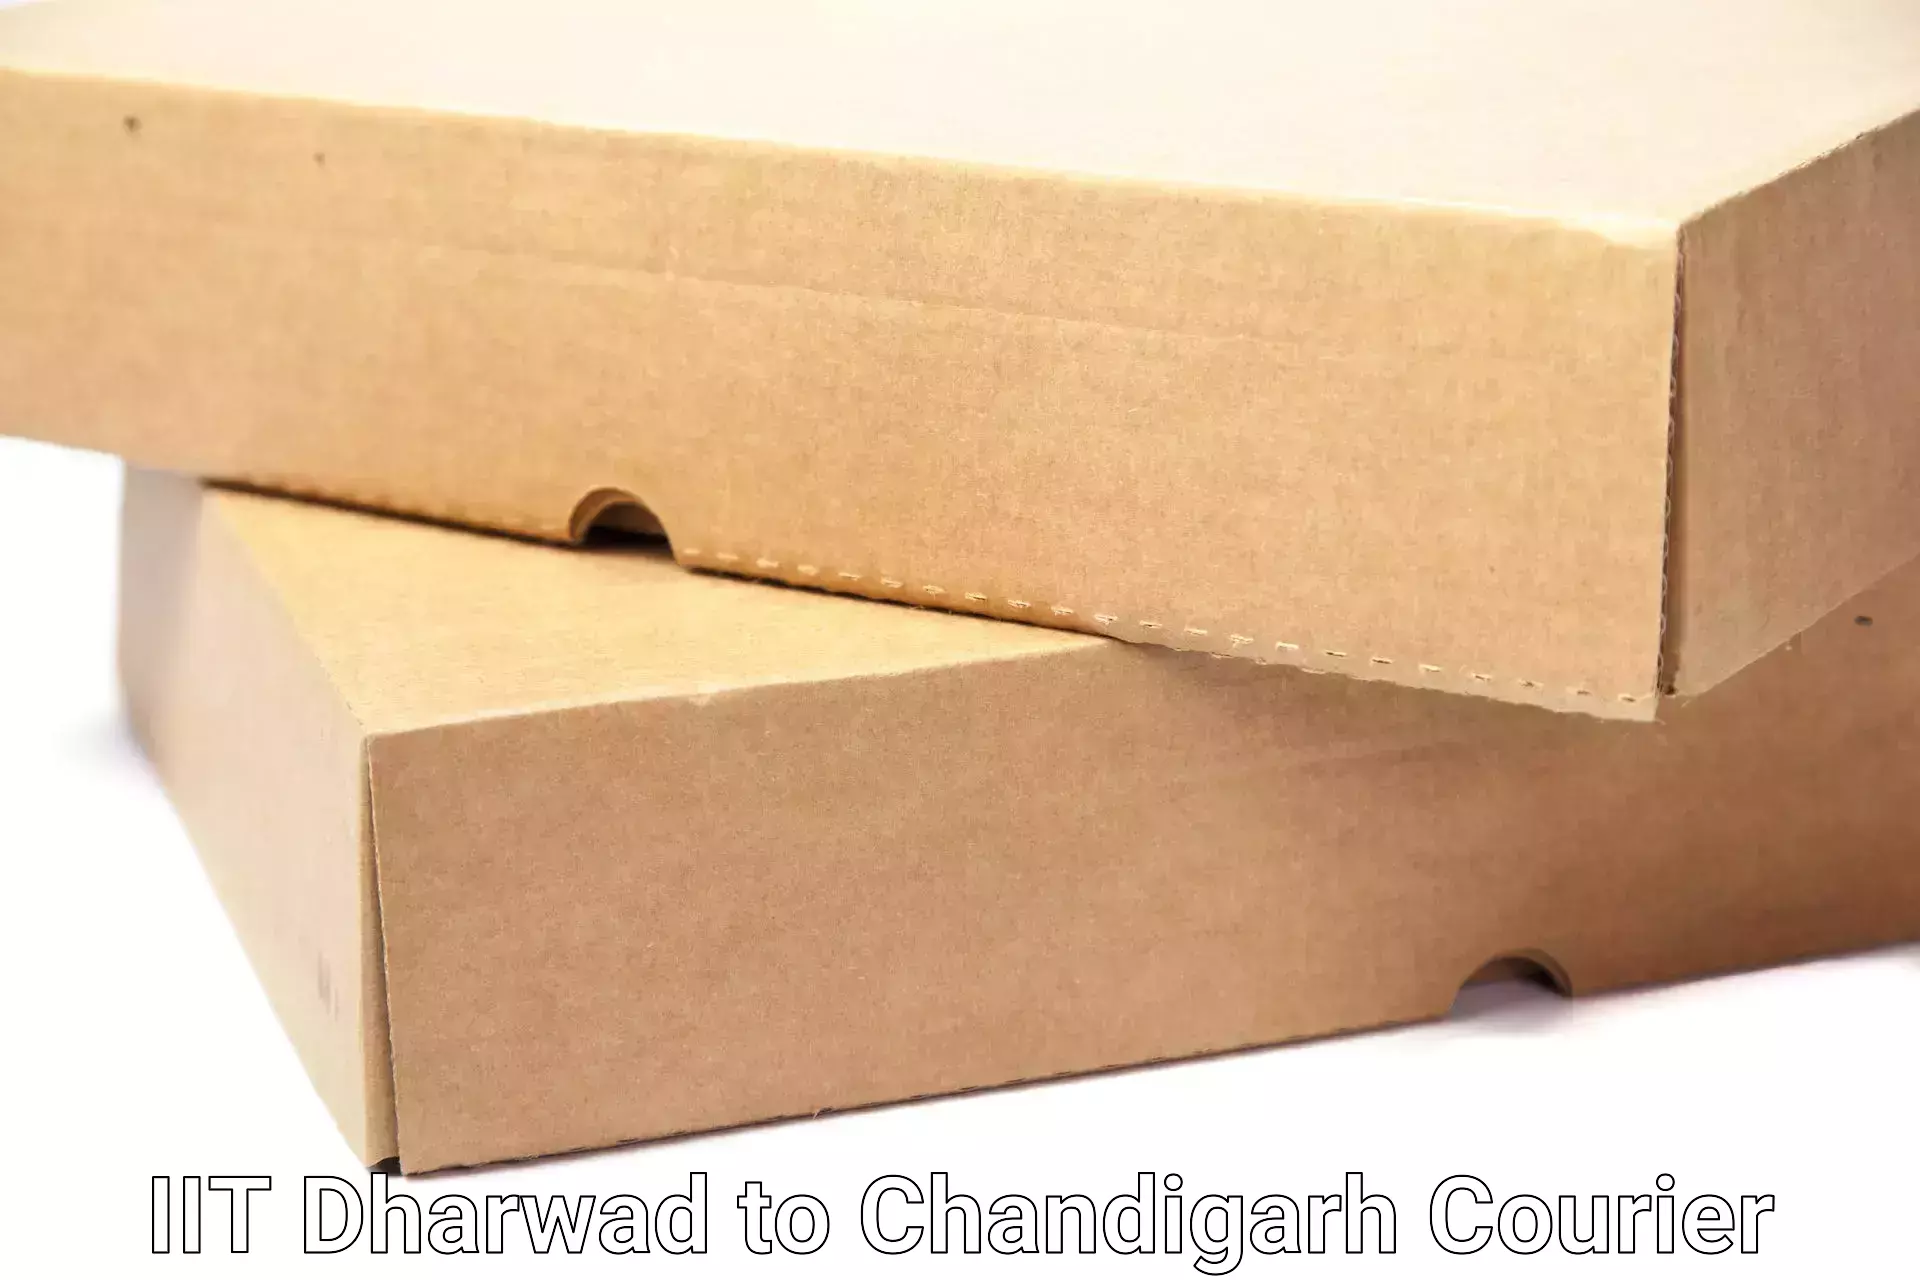 Dependable household movers IIT Dharwad to Chandigarh